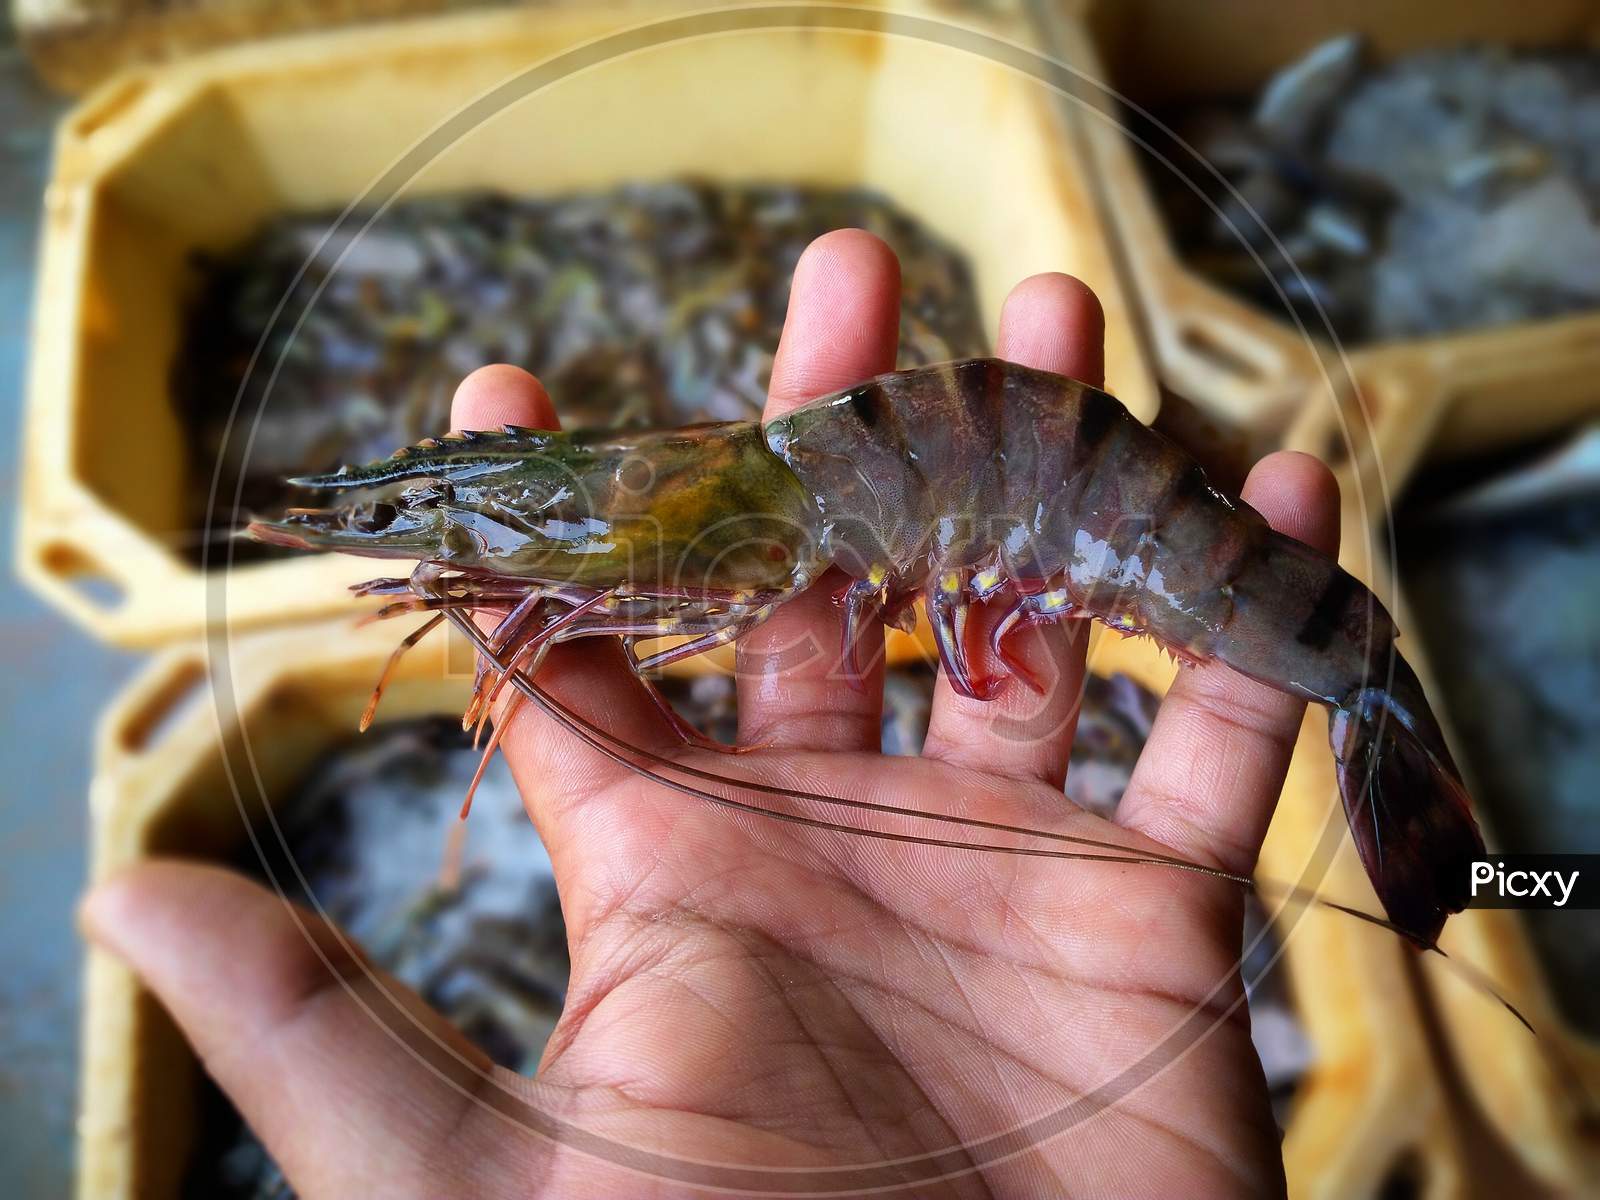 freshly harvested shrimp in hand